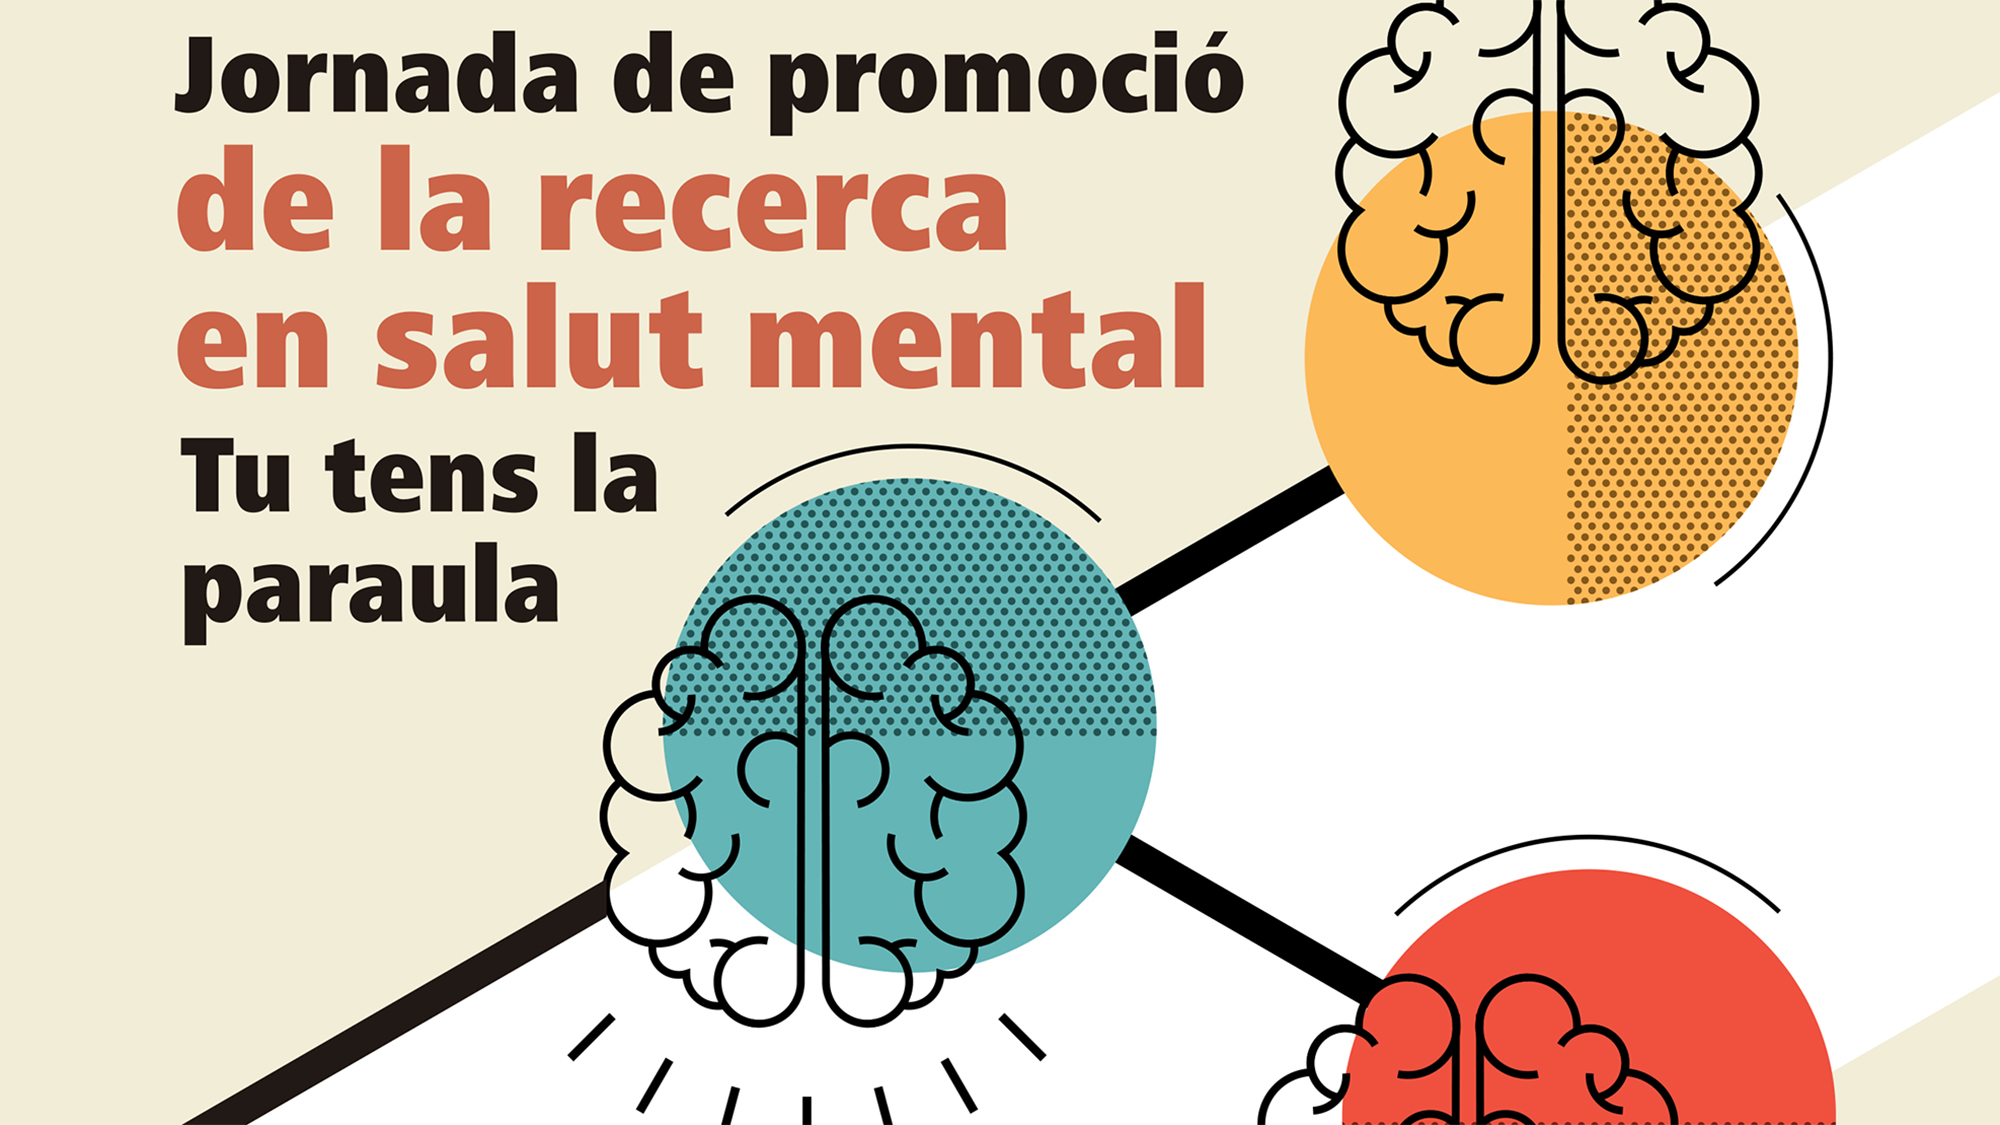 detall del pòster de la jornada de promoció de la recerca en salut mental on es veu la icona de tres cervells dibuixats.